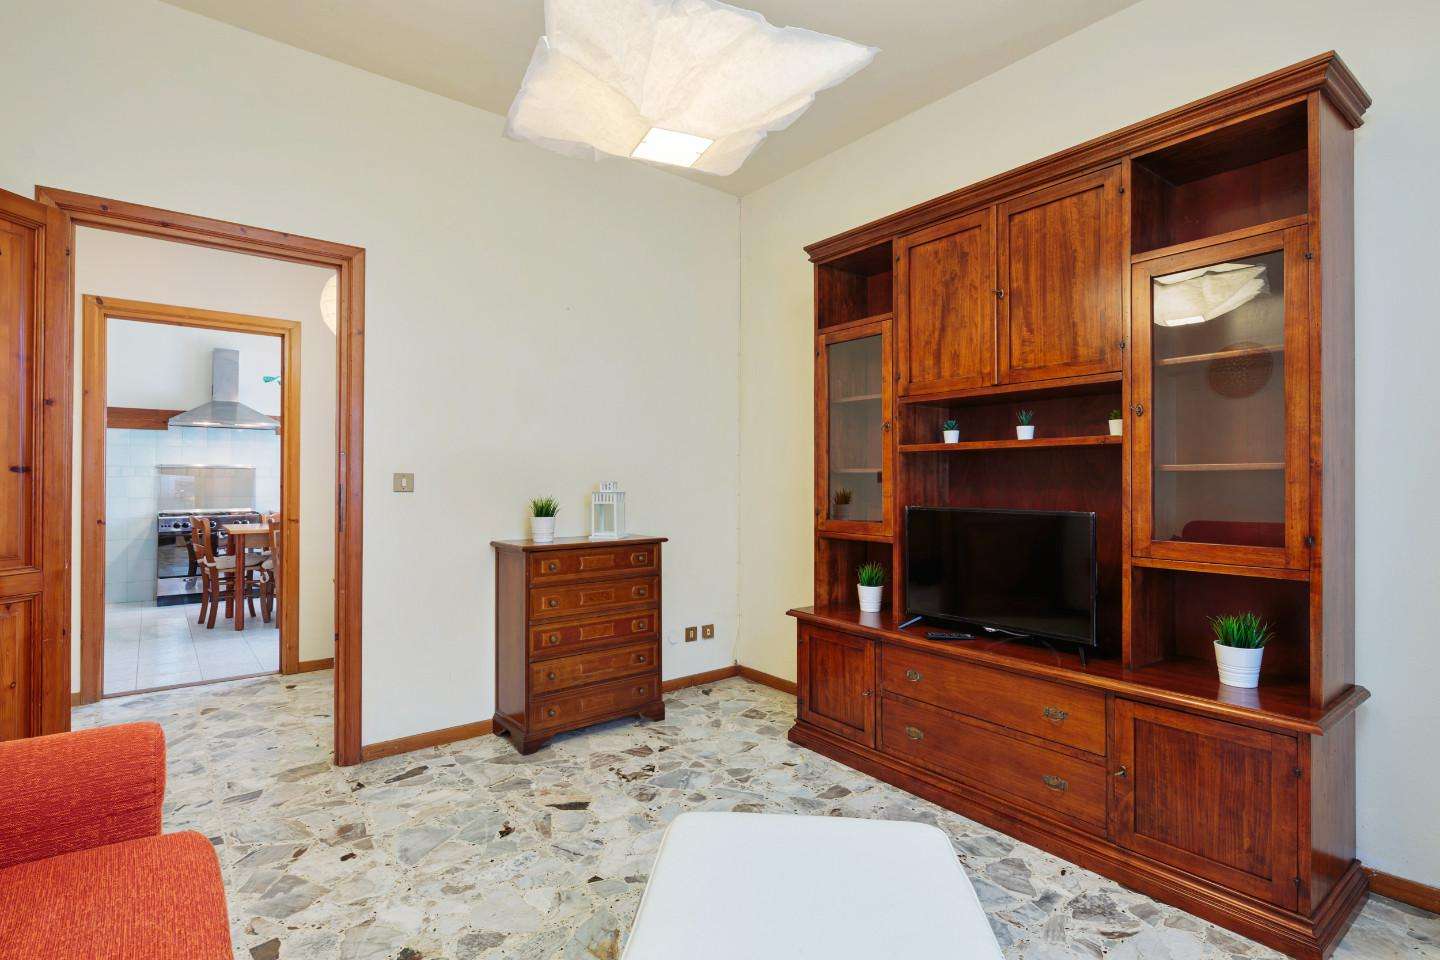 Casa Bi - Trifamiliare in Affitto a Cascina Via Bruno Buozzi,